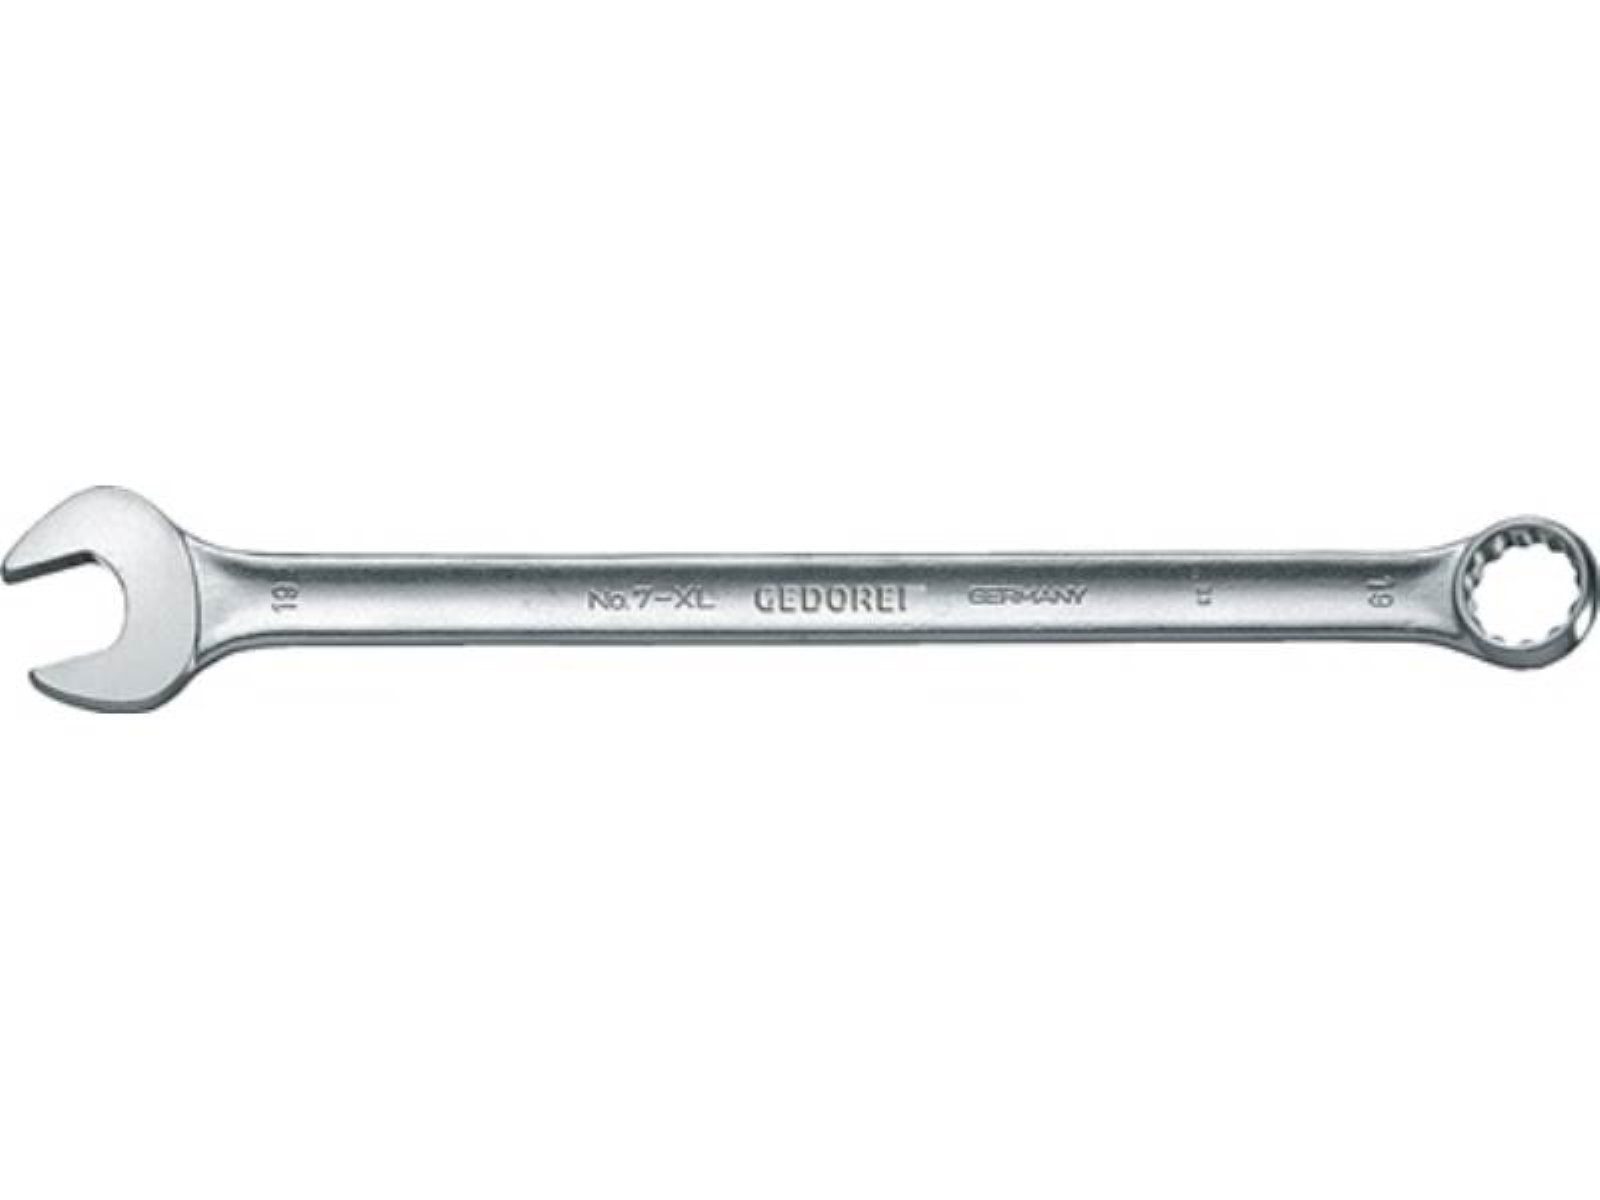 SW Ringmaulschlüssel A ext.lang 8mm GEDORE CV-Stahl XL Form Gedore 7 L.170mm Maulschlüssel